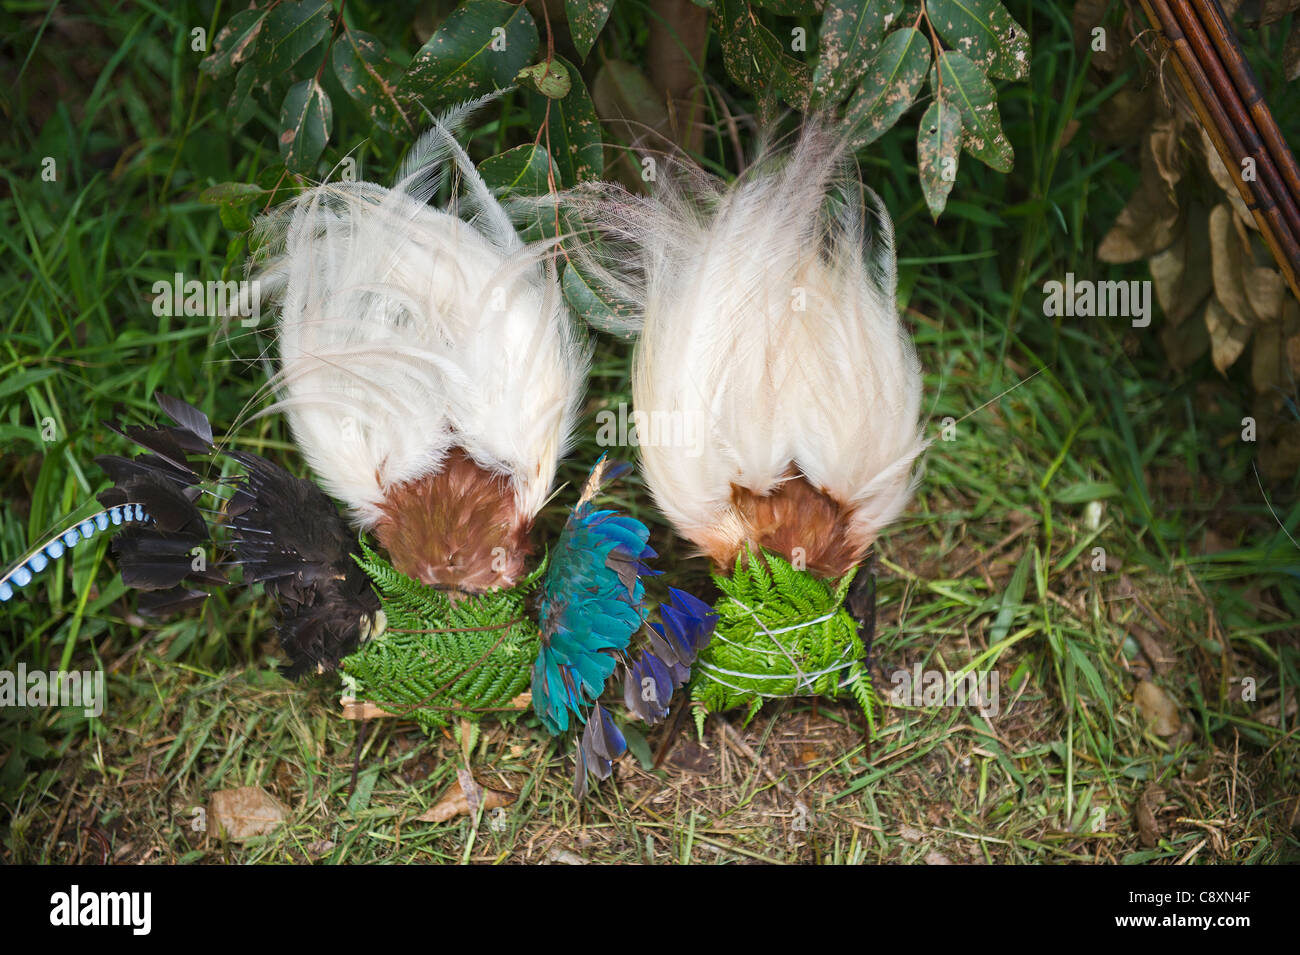 Minor uccello del paradiso pennacchi di testa per vestire a Paiya mostrano Highlands Occidentali Papua Nuova Guinea Foto Stock